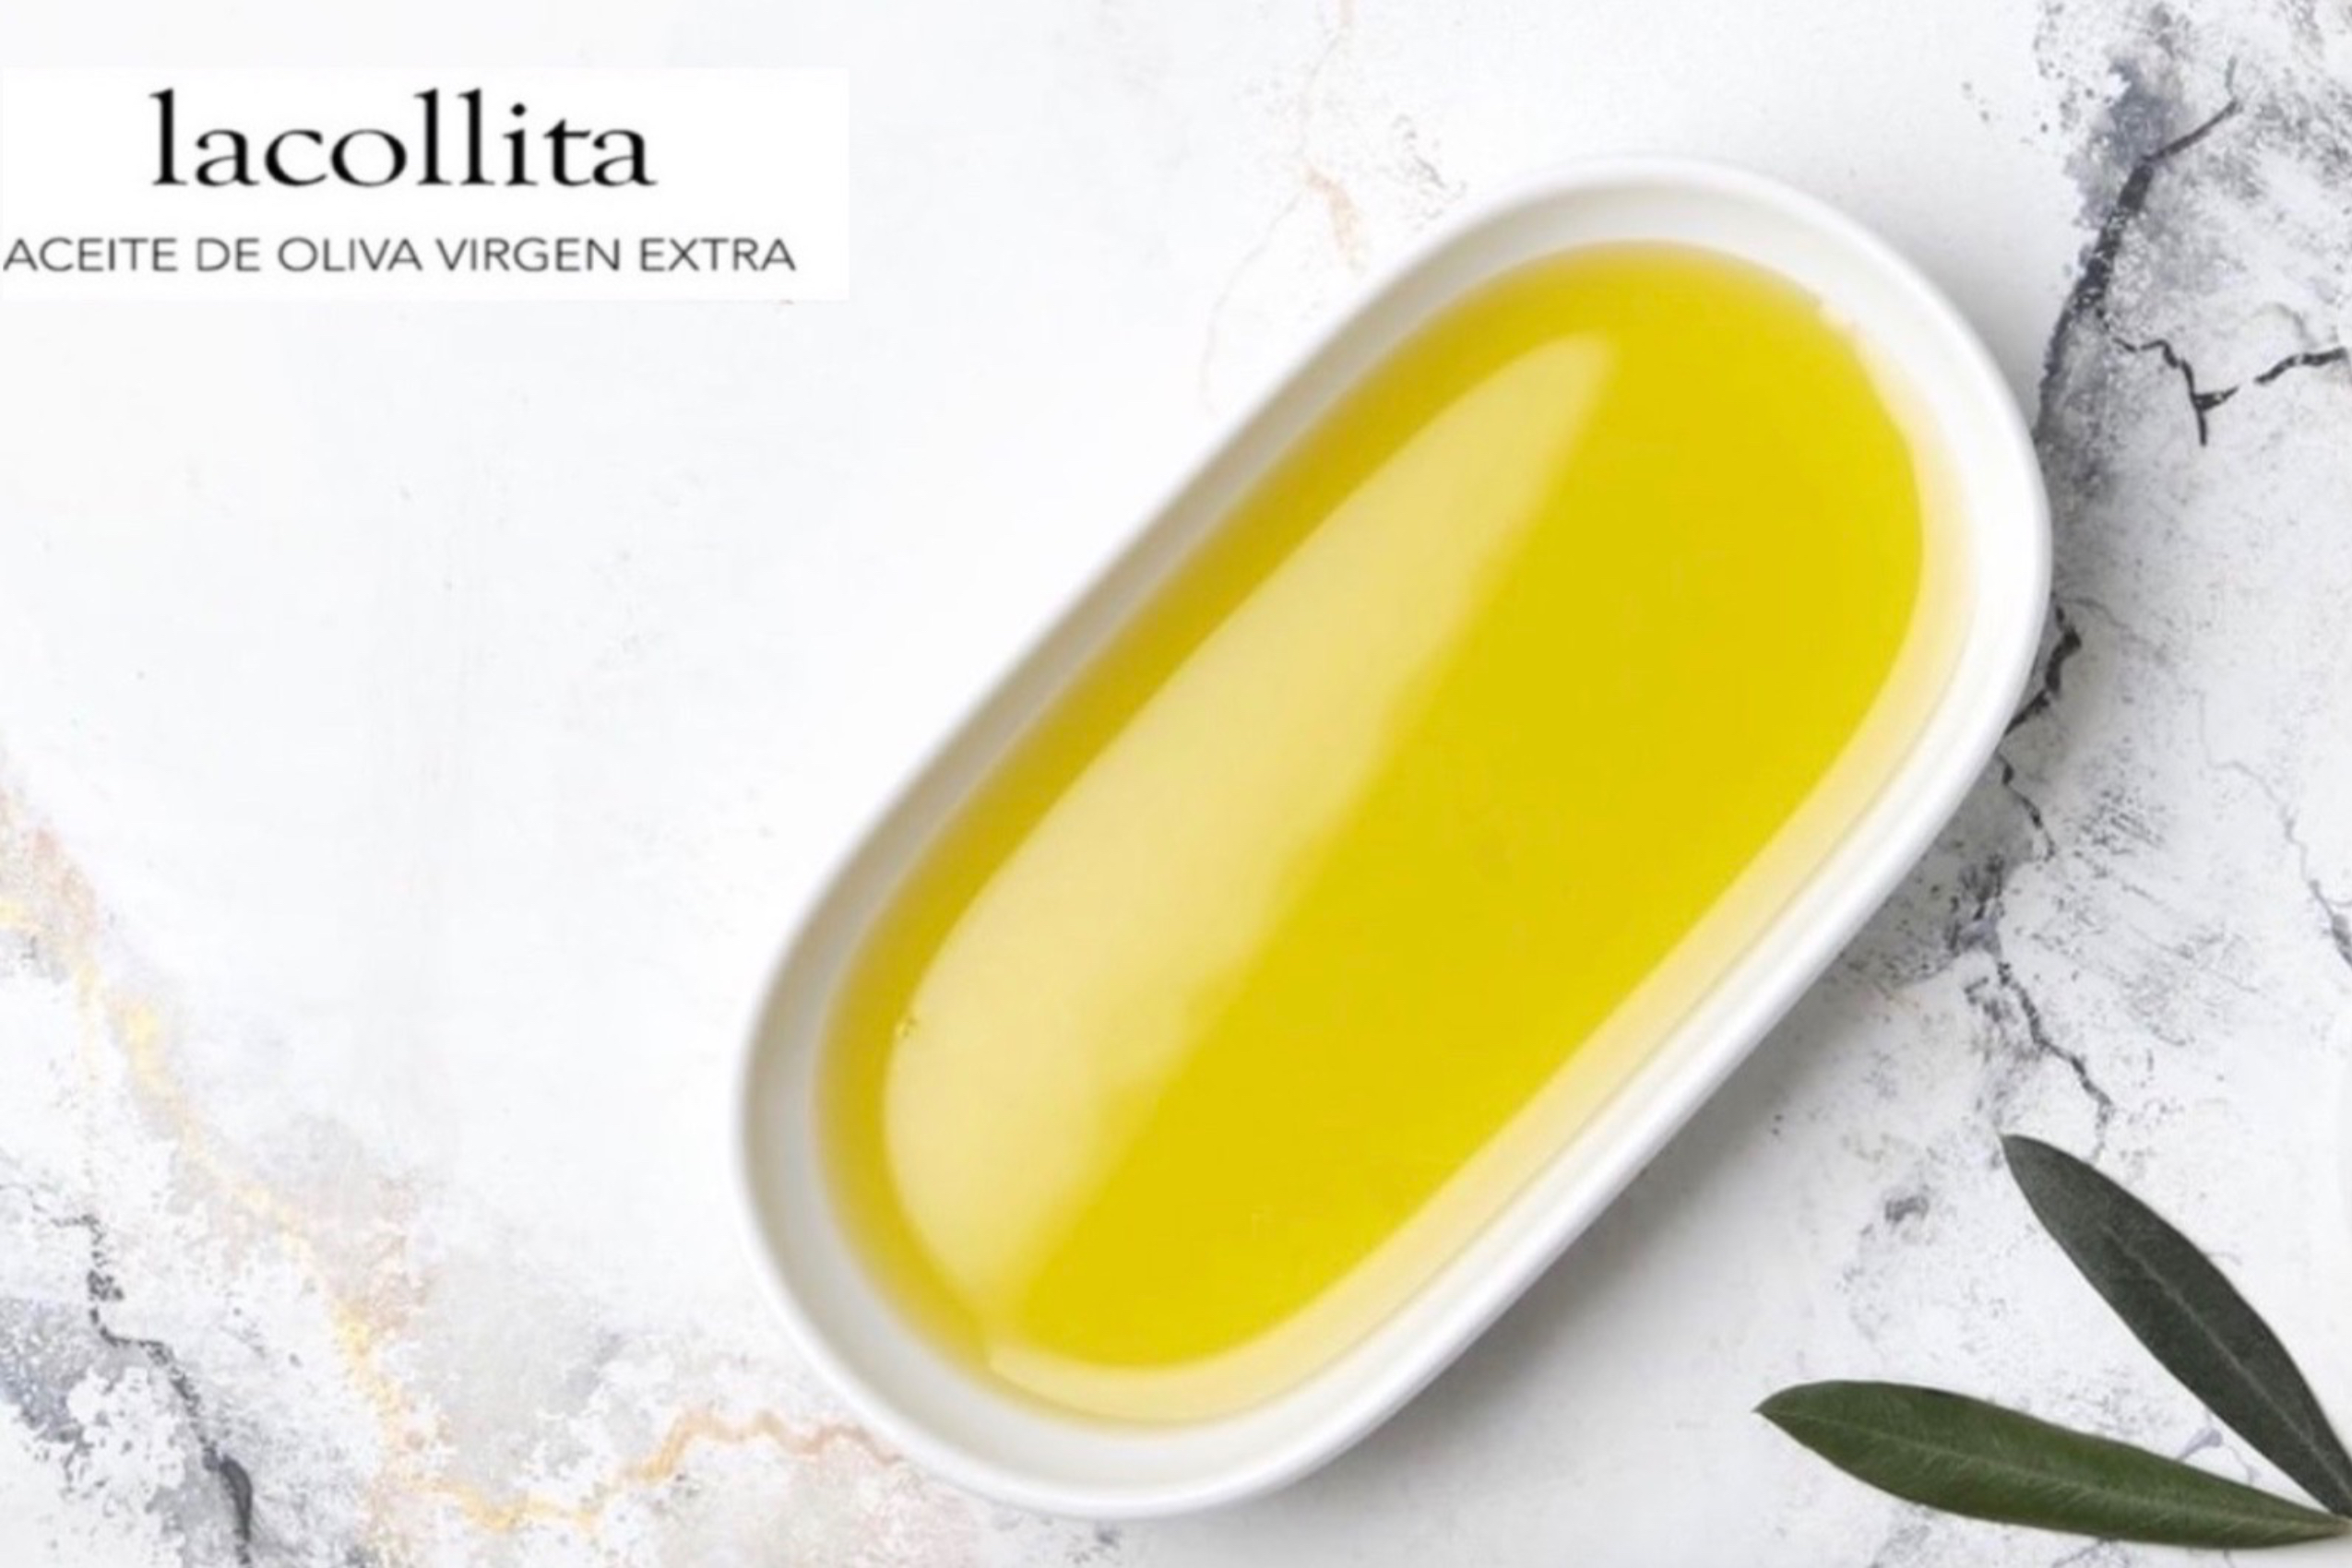 Médicos y profesionales recomiendan ingerir de dos a tres cucharadas de aceite de oliva virgen e